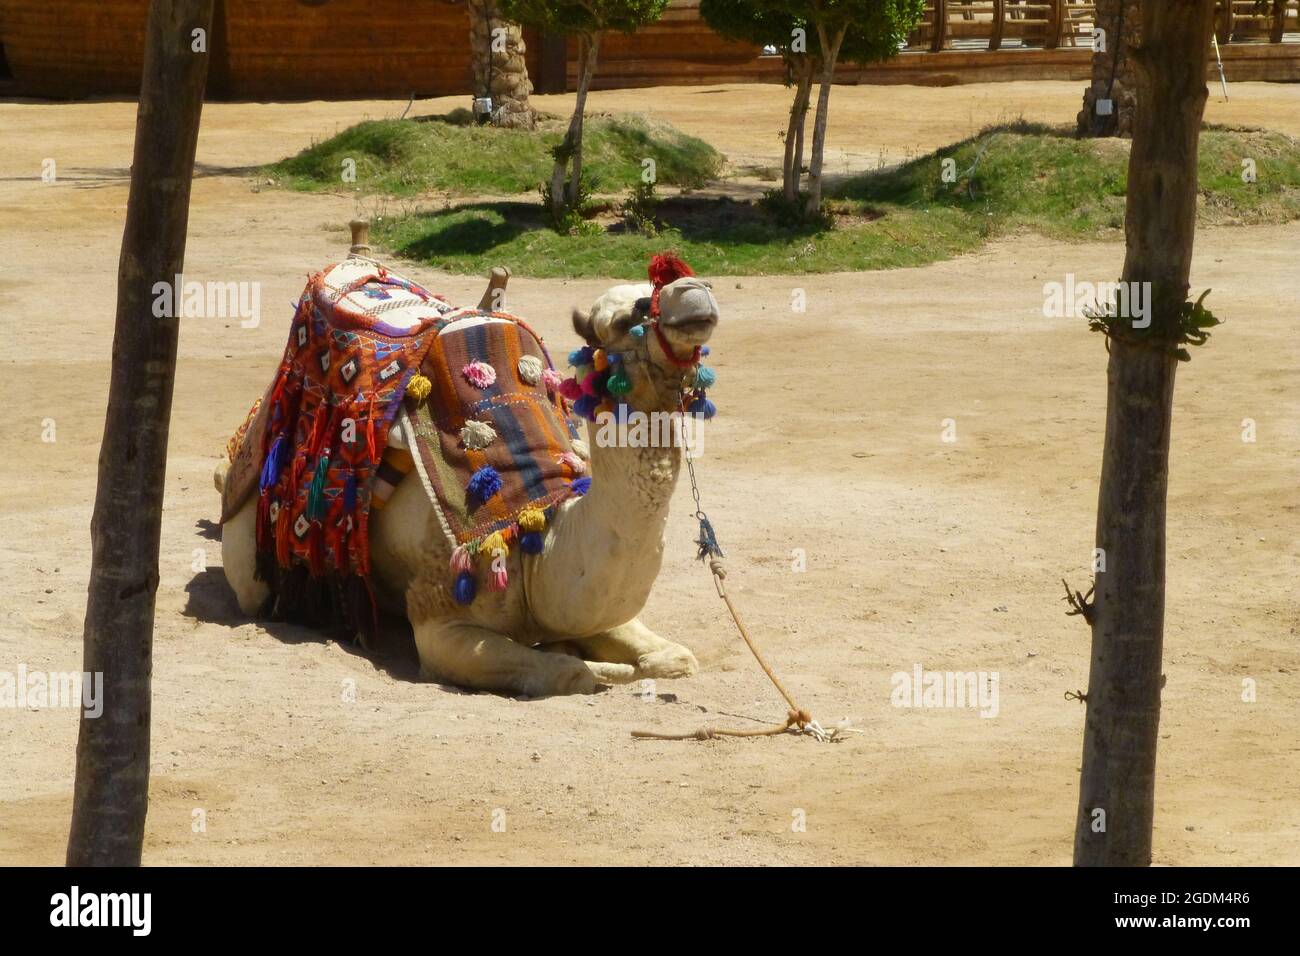 Kamele in Sharm El Sheikh Ägypten sitzen Seilseile ruhen Tier geparkt heißes sonniges Wetter Araber Zug farbigen Sattel sitzen sitzen sitzen Stockfoto